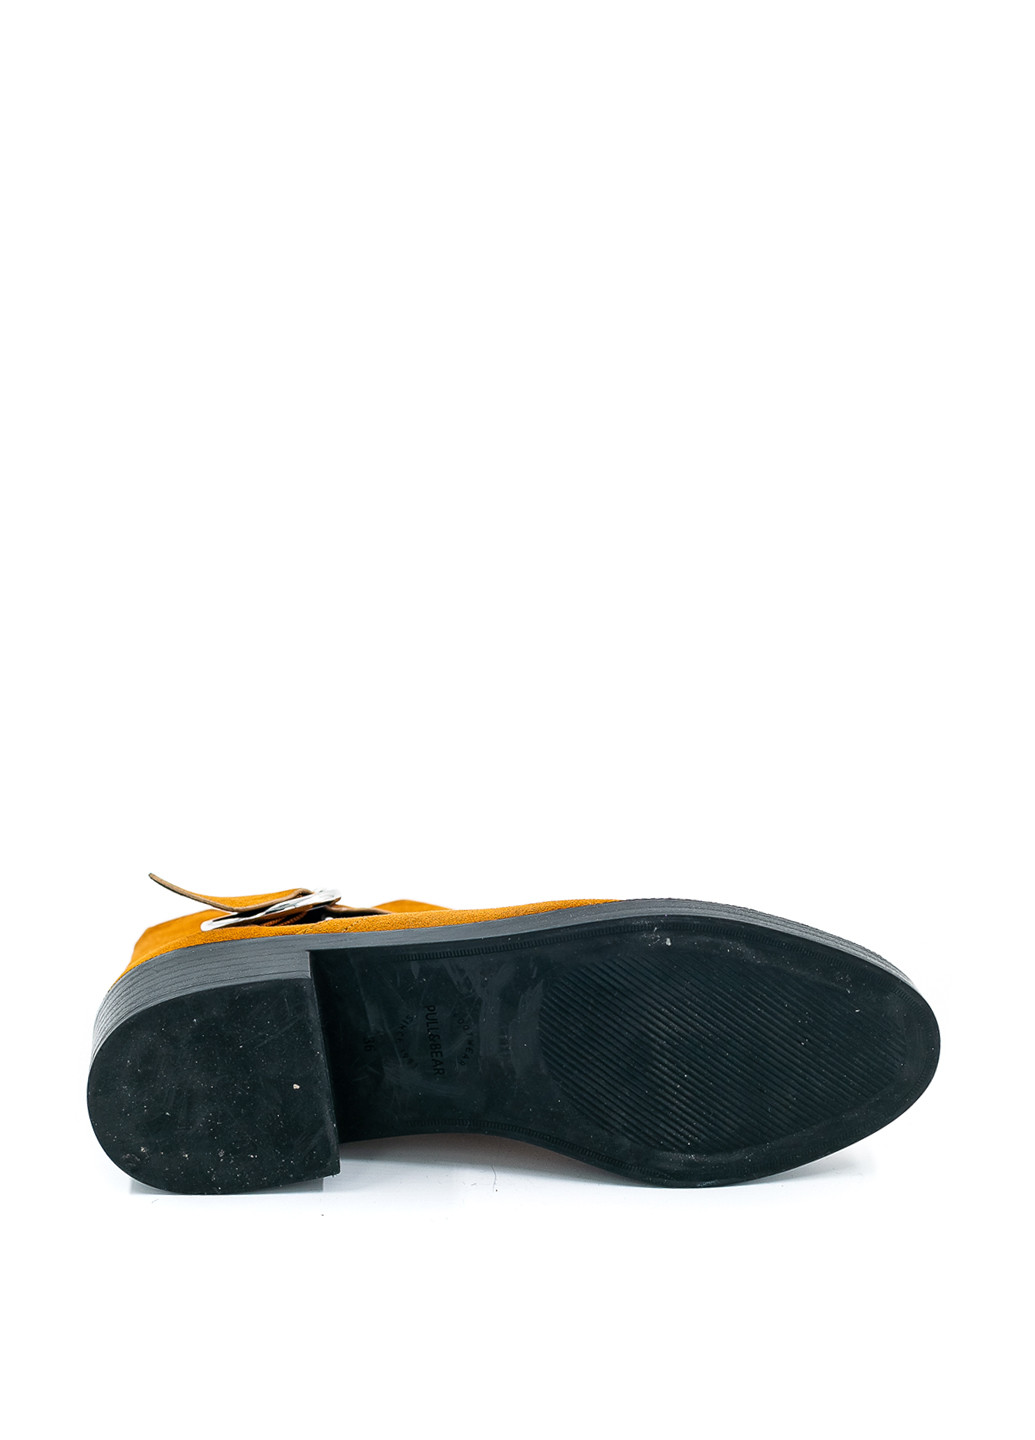 Осенние ботинки Pull & Bear с пряжкой тканевые, из искусственной замши